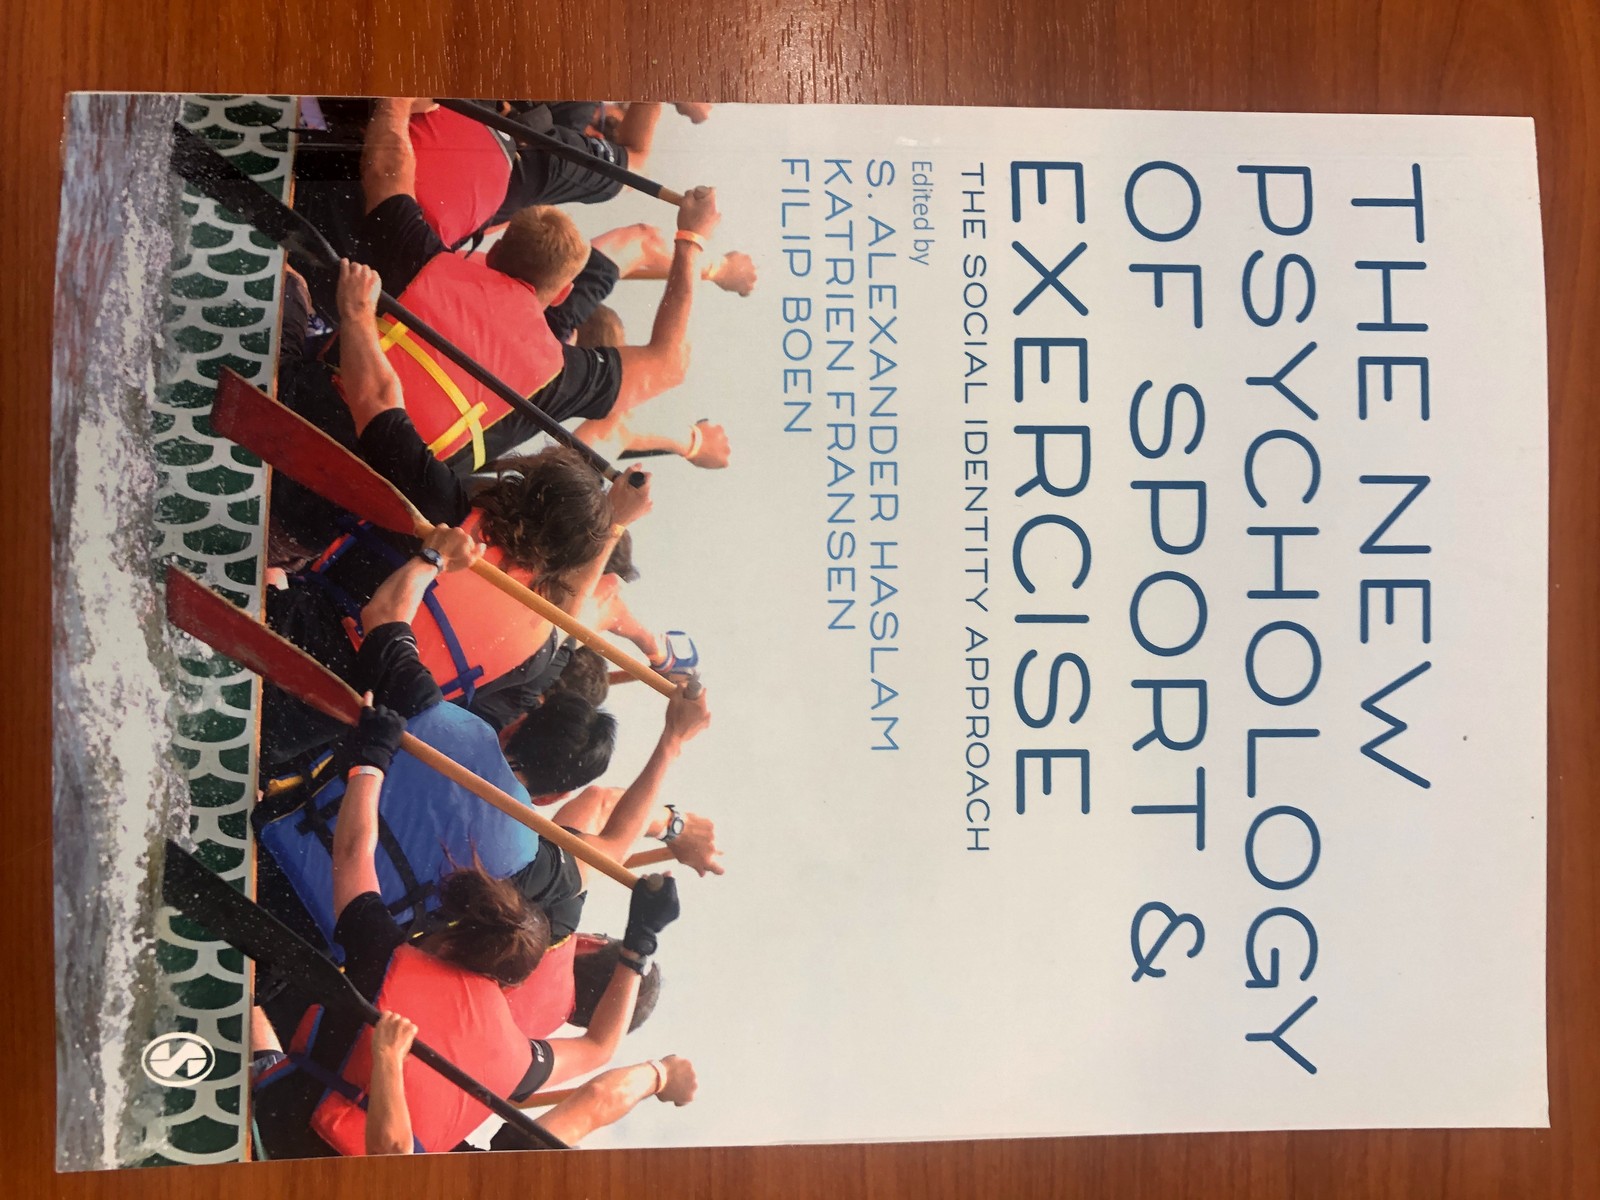 S. Alexander Haslam, Katrien Fransen és Filip Boen The New Psychology of Sport and Exercise című könyvének borítója.